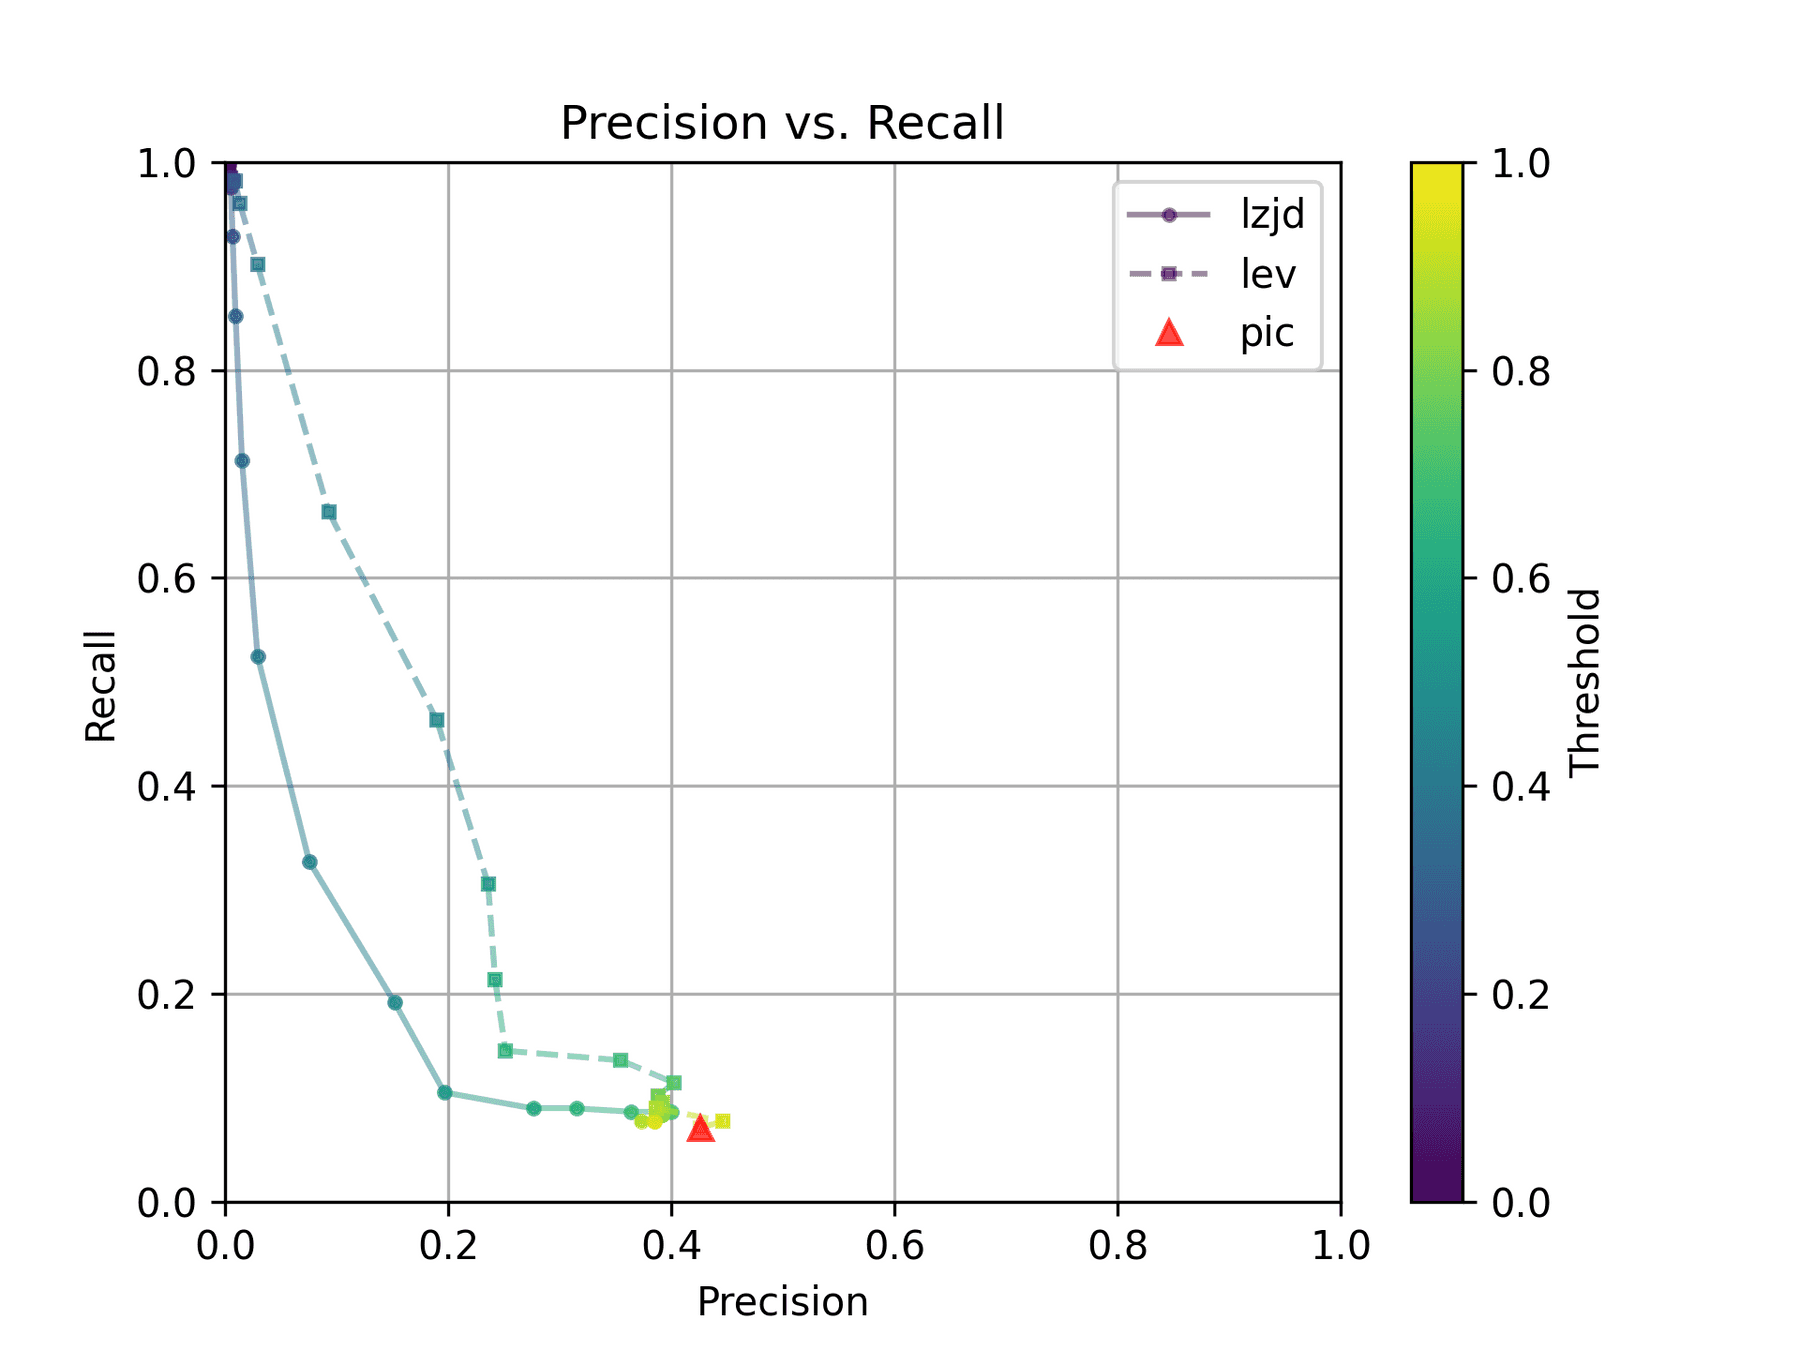 Precision vs. Recall plot for "openssl gcc vs clang"